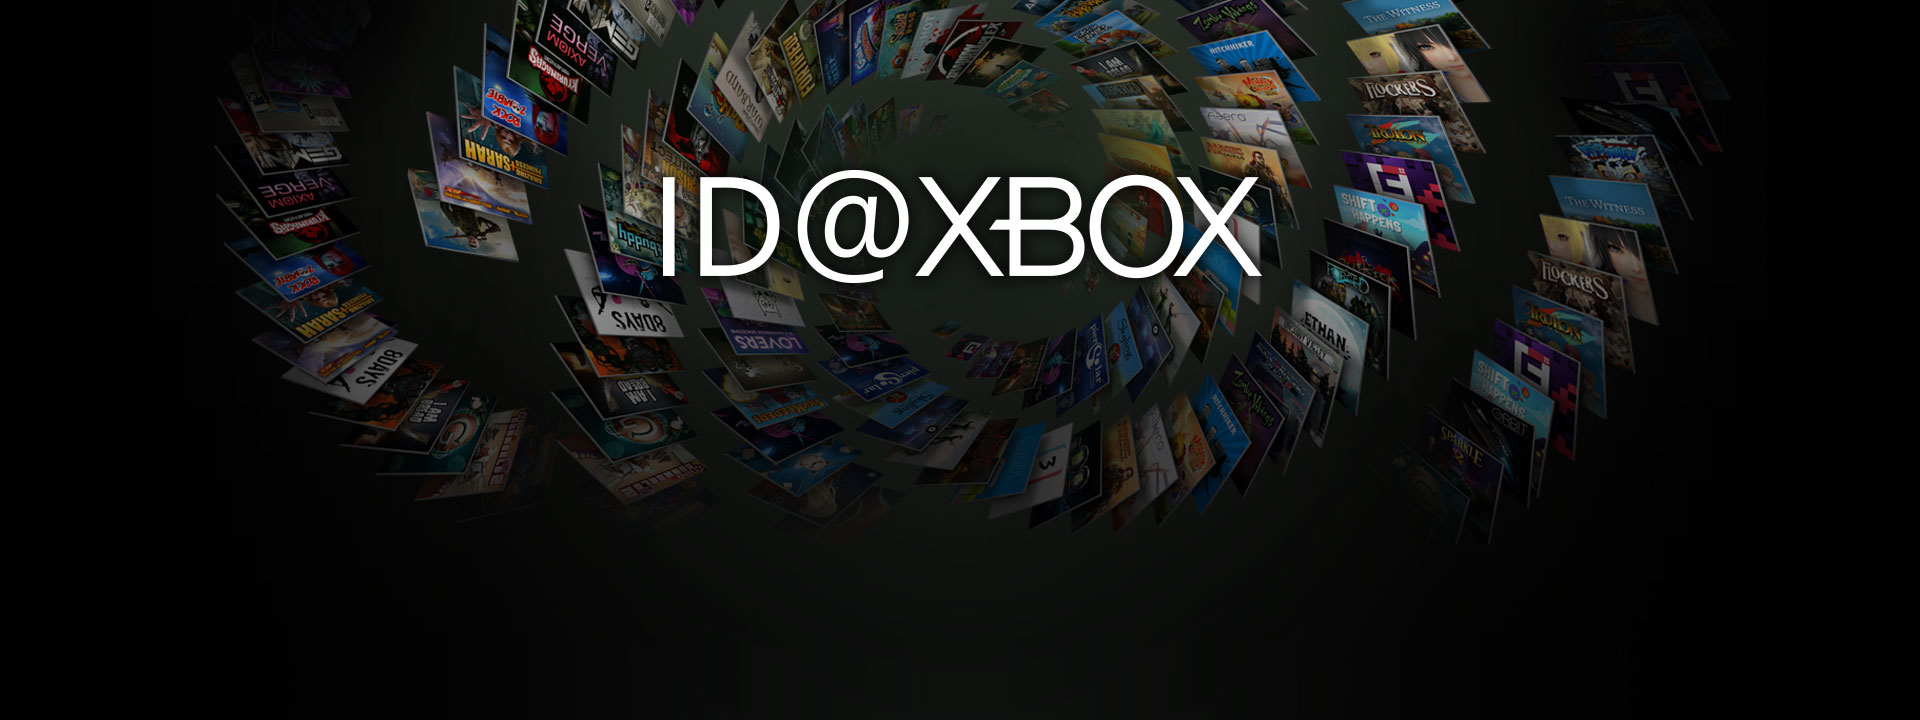 Logotipo do ID at Xbox na frente de uma coleção de imagens de caixa de jogos ID